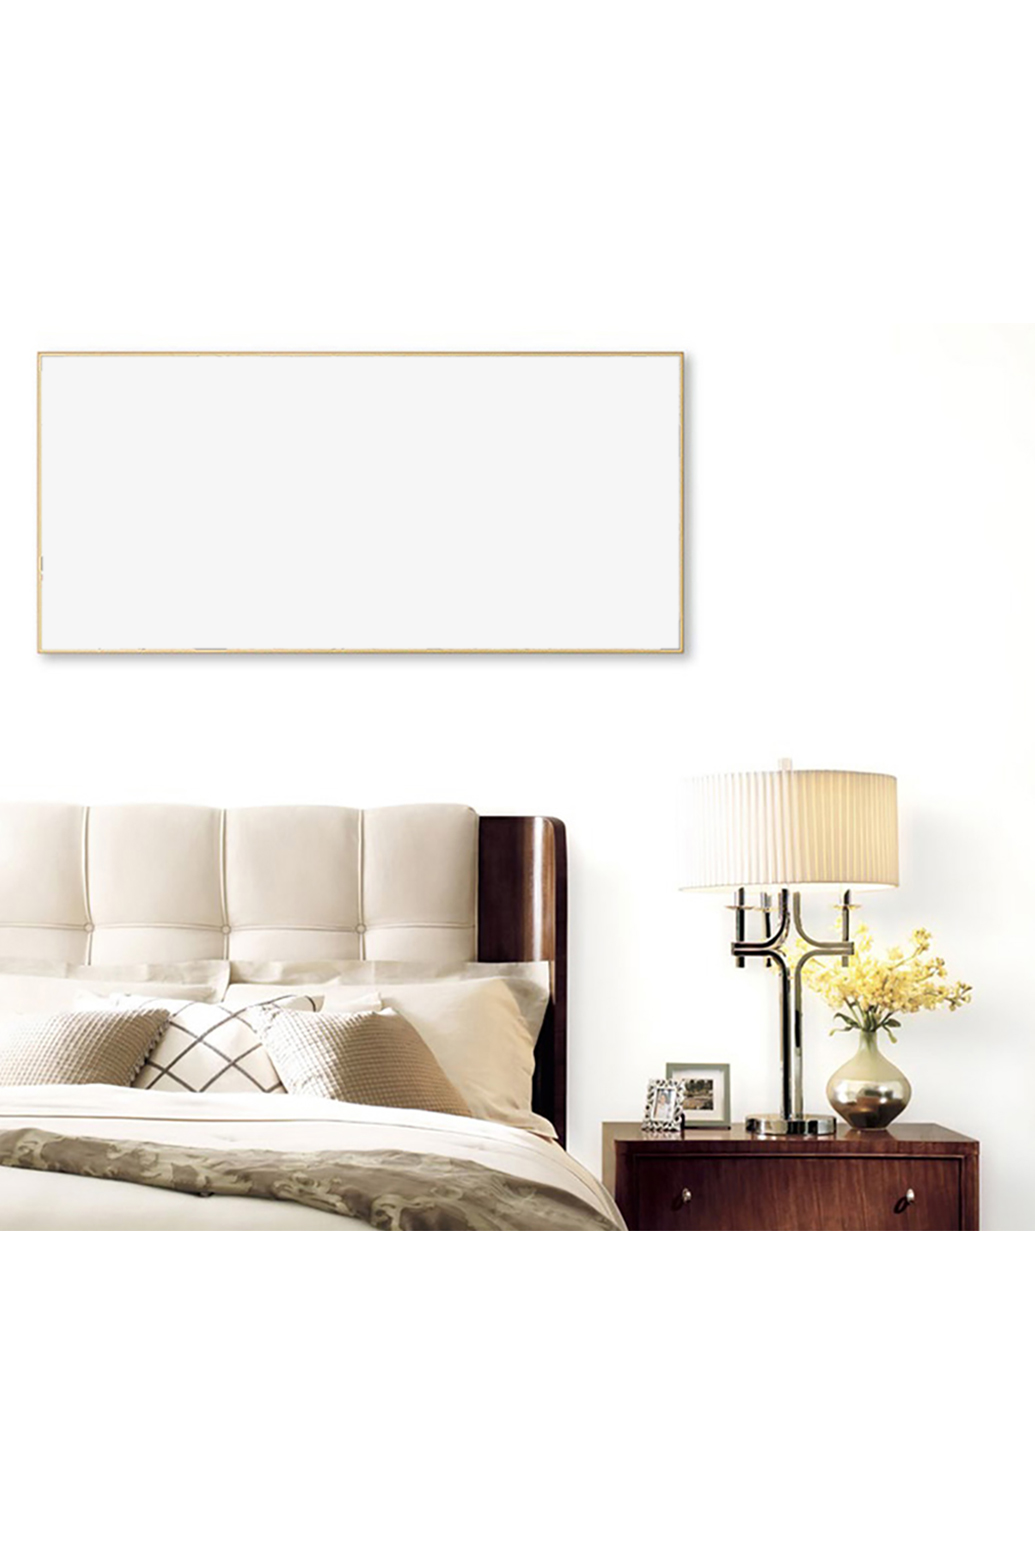 卧室内装饰素材设计画框模型模板白色背景创意样机图片